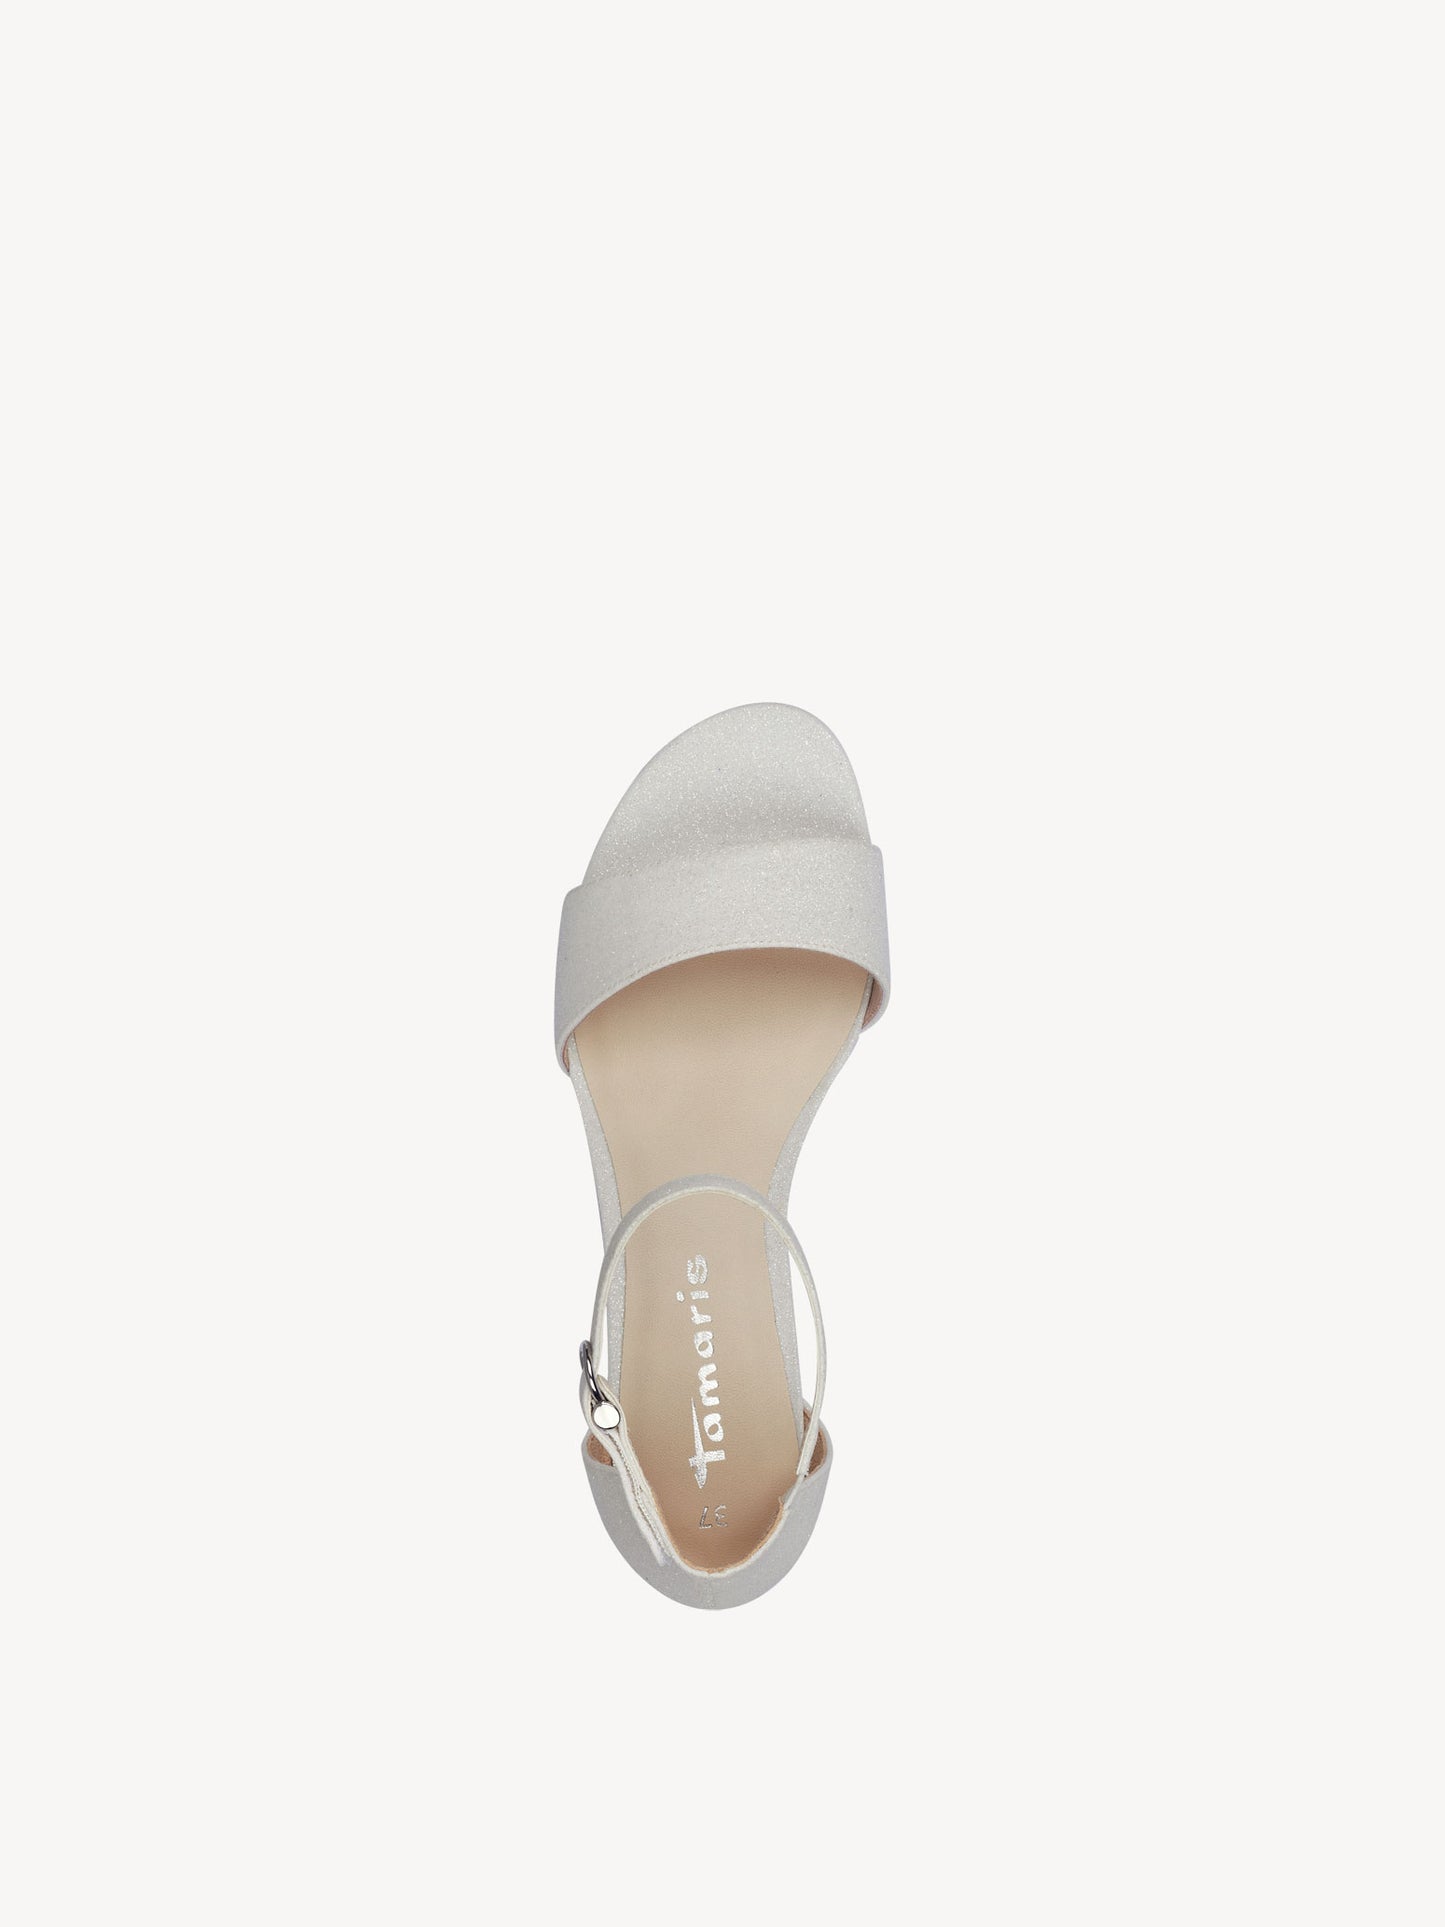 Tamaris - Sandal, 42-0696 - White glam